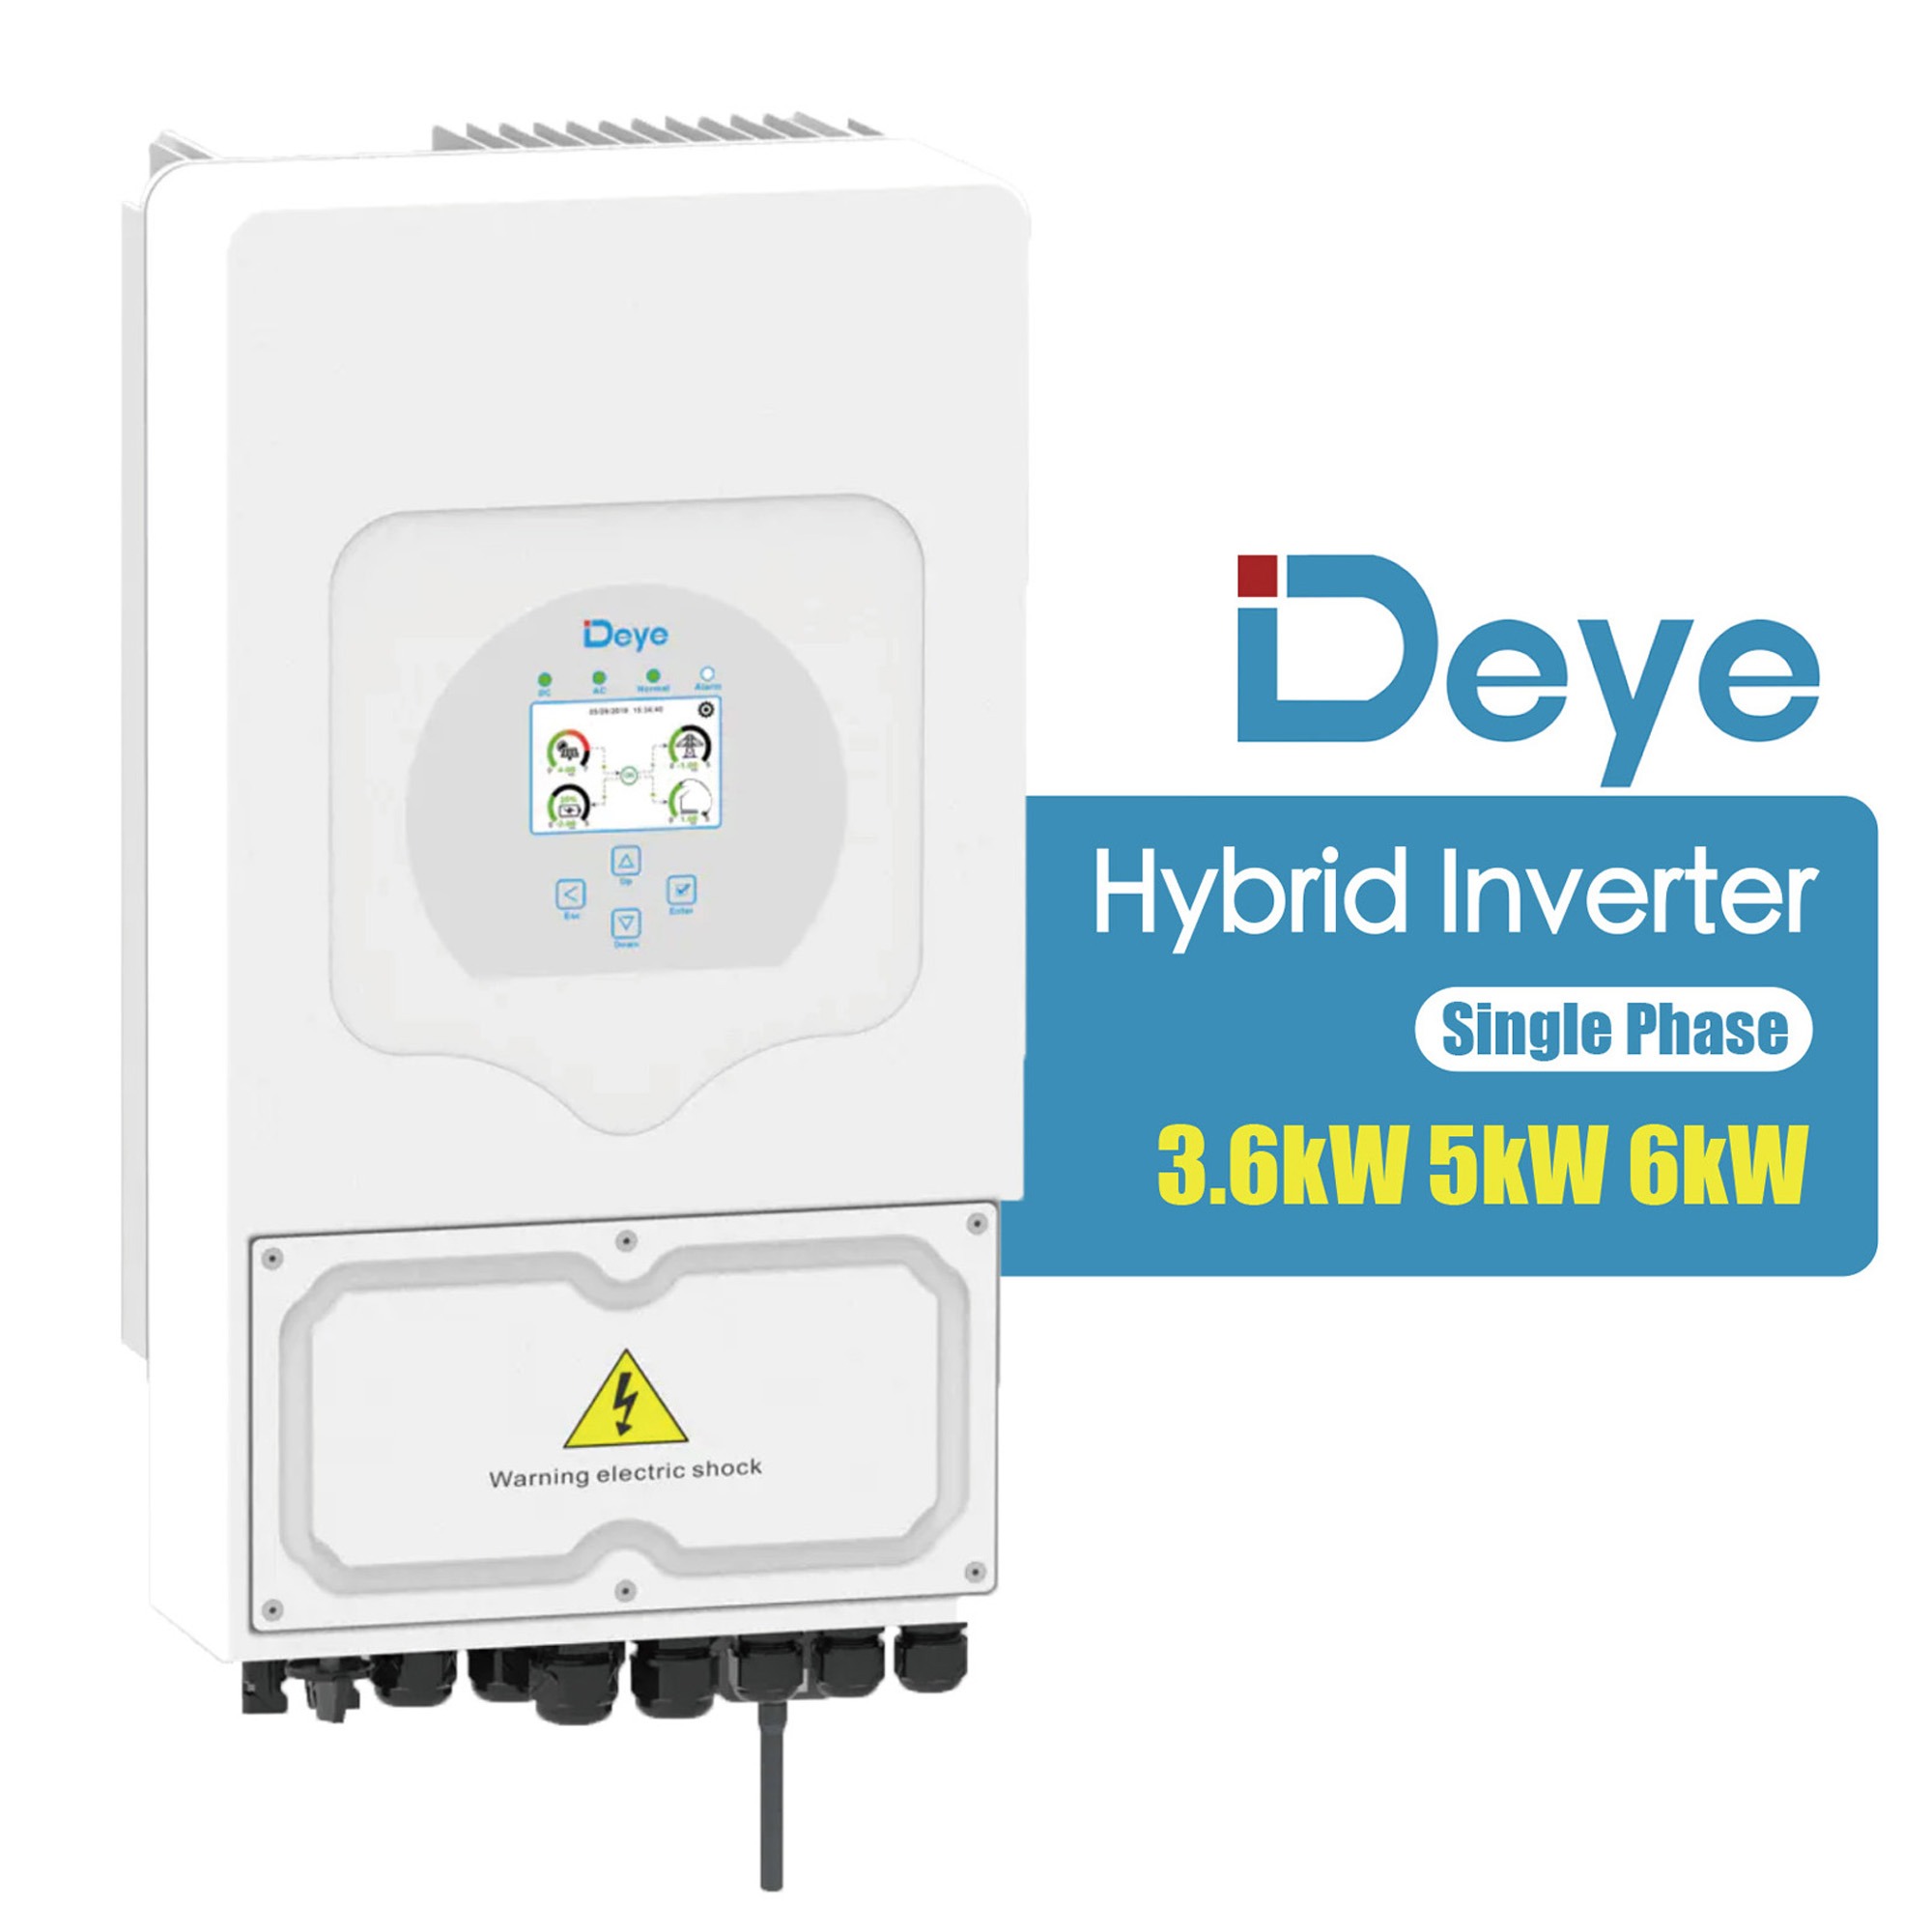 Deye Hybrid Inverter